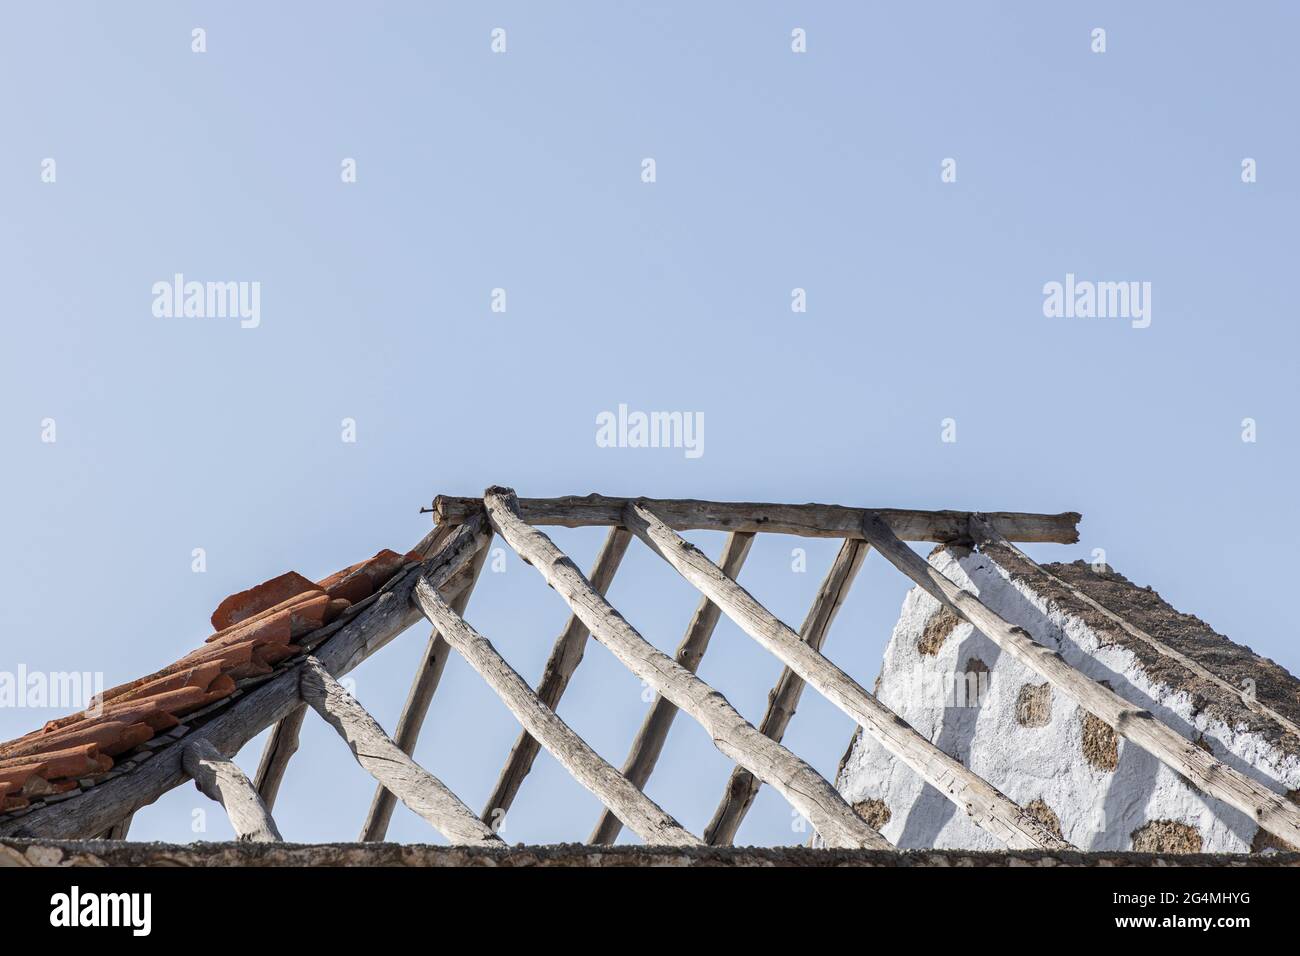 Freiliegende Holzdachstützen in der Casa Fuerte, Adeje, Teneriffa, Kanarische Inseln, Spanien Stockfoto